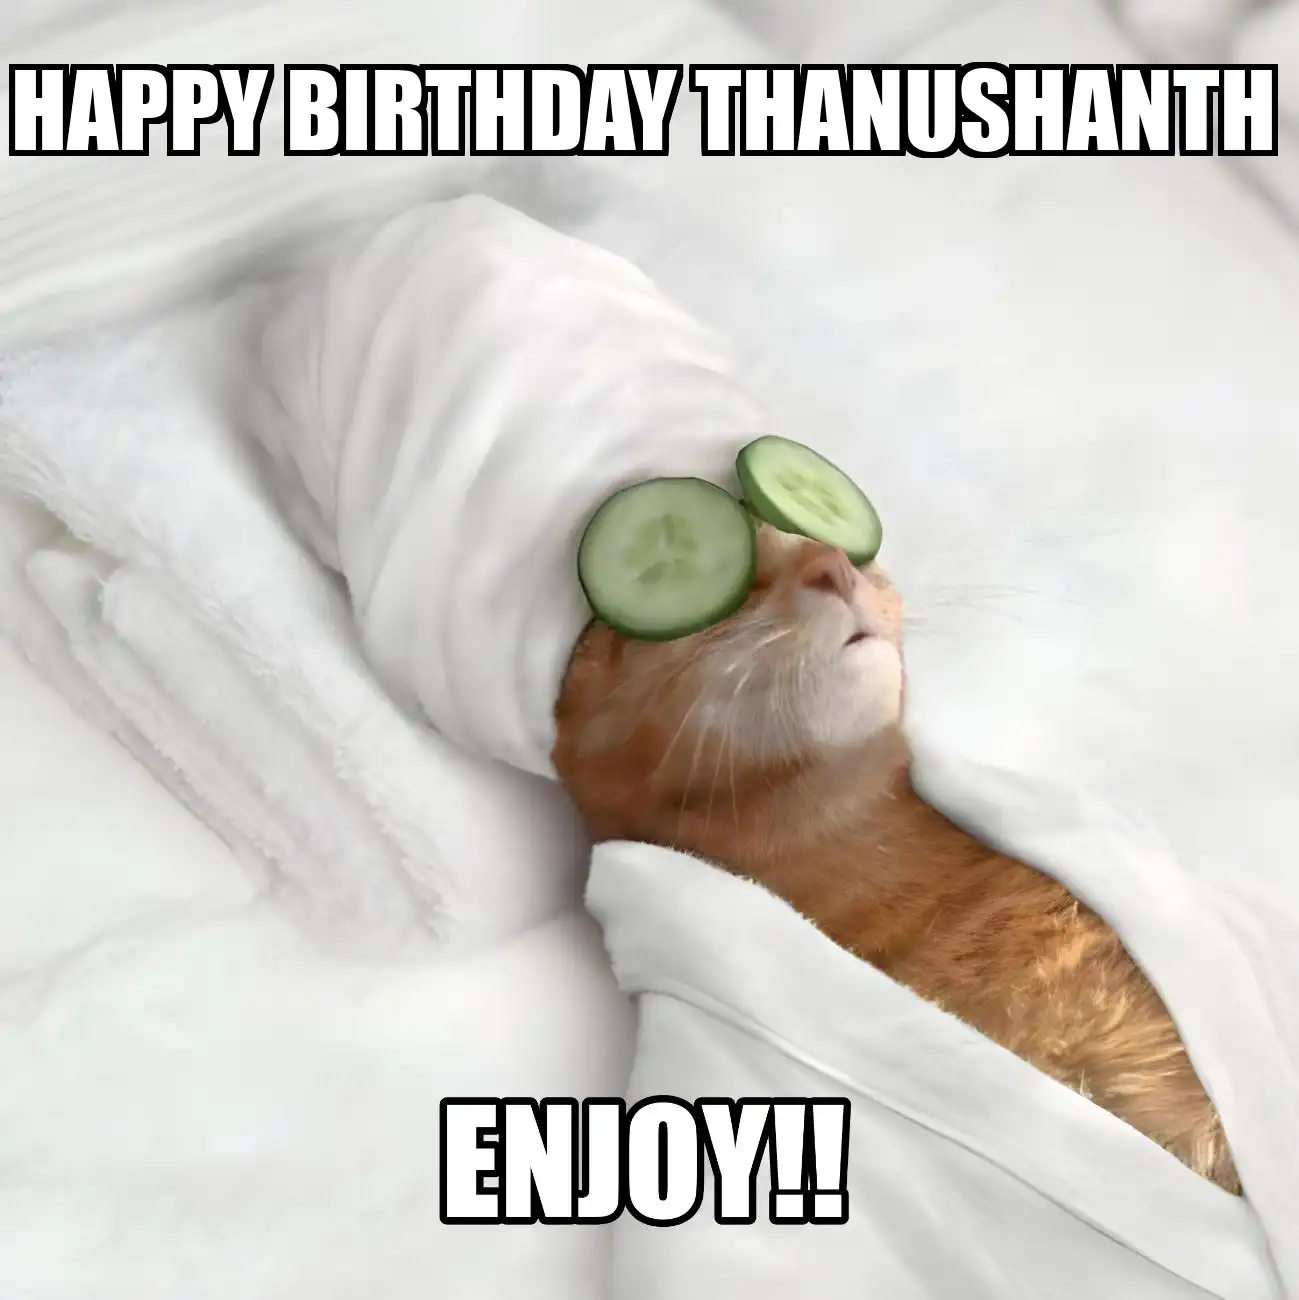 Happy Birthday Thanushanth Enjoy Cat Meme